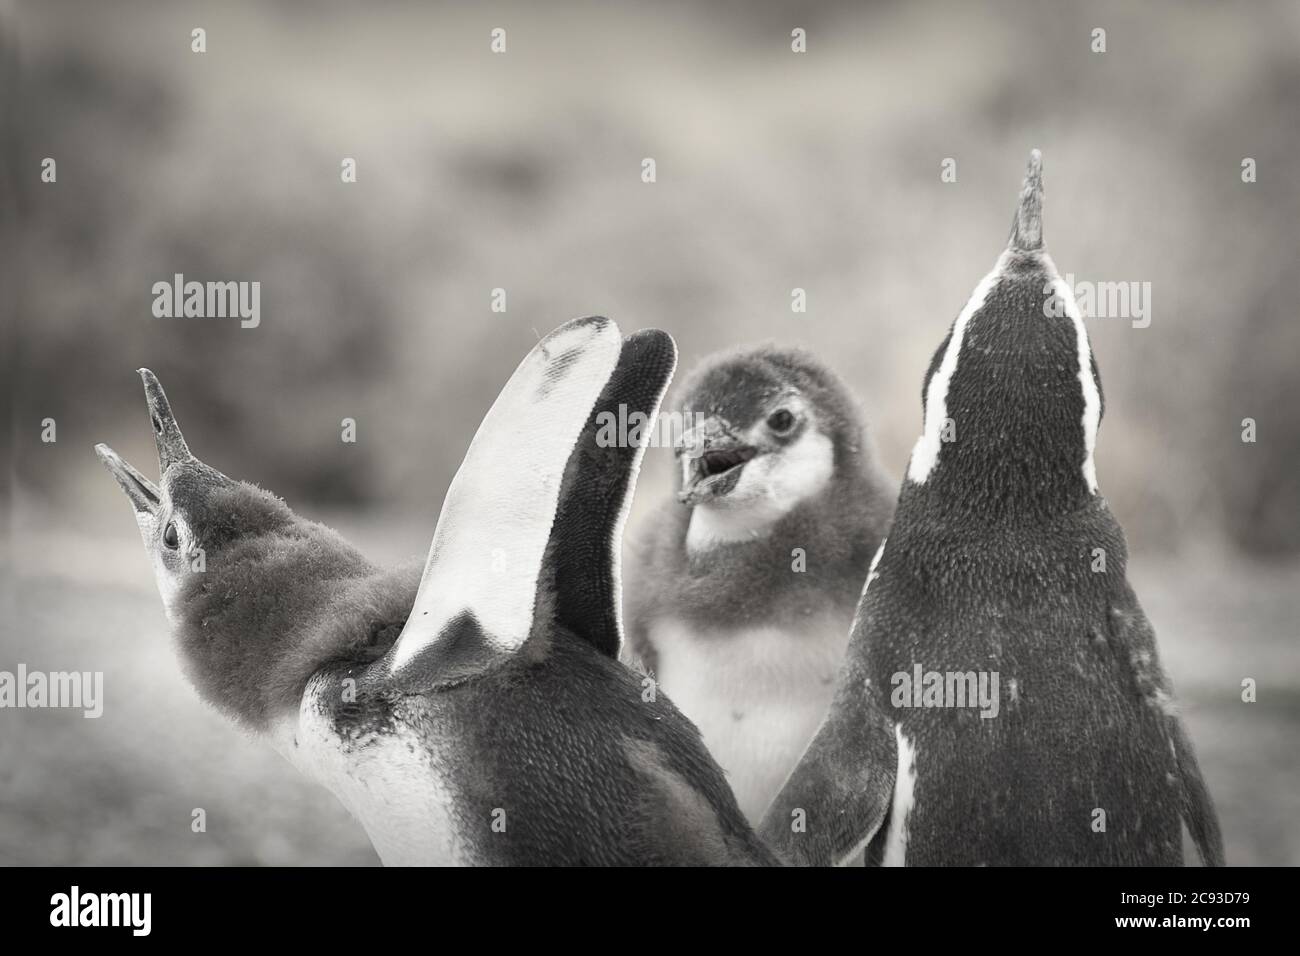 Colpo di primo piano in scala di grigi di un gruppo di graziosi pinguini Foto Stock